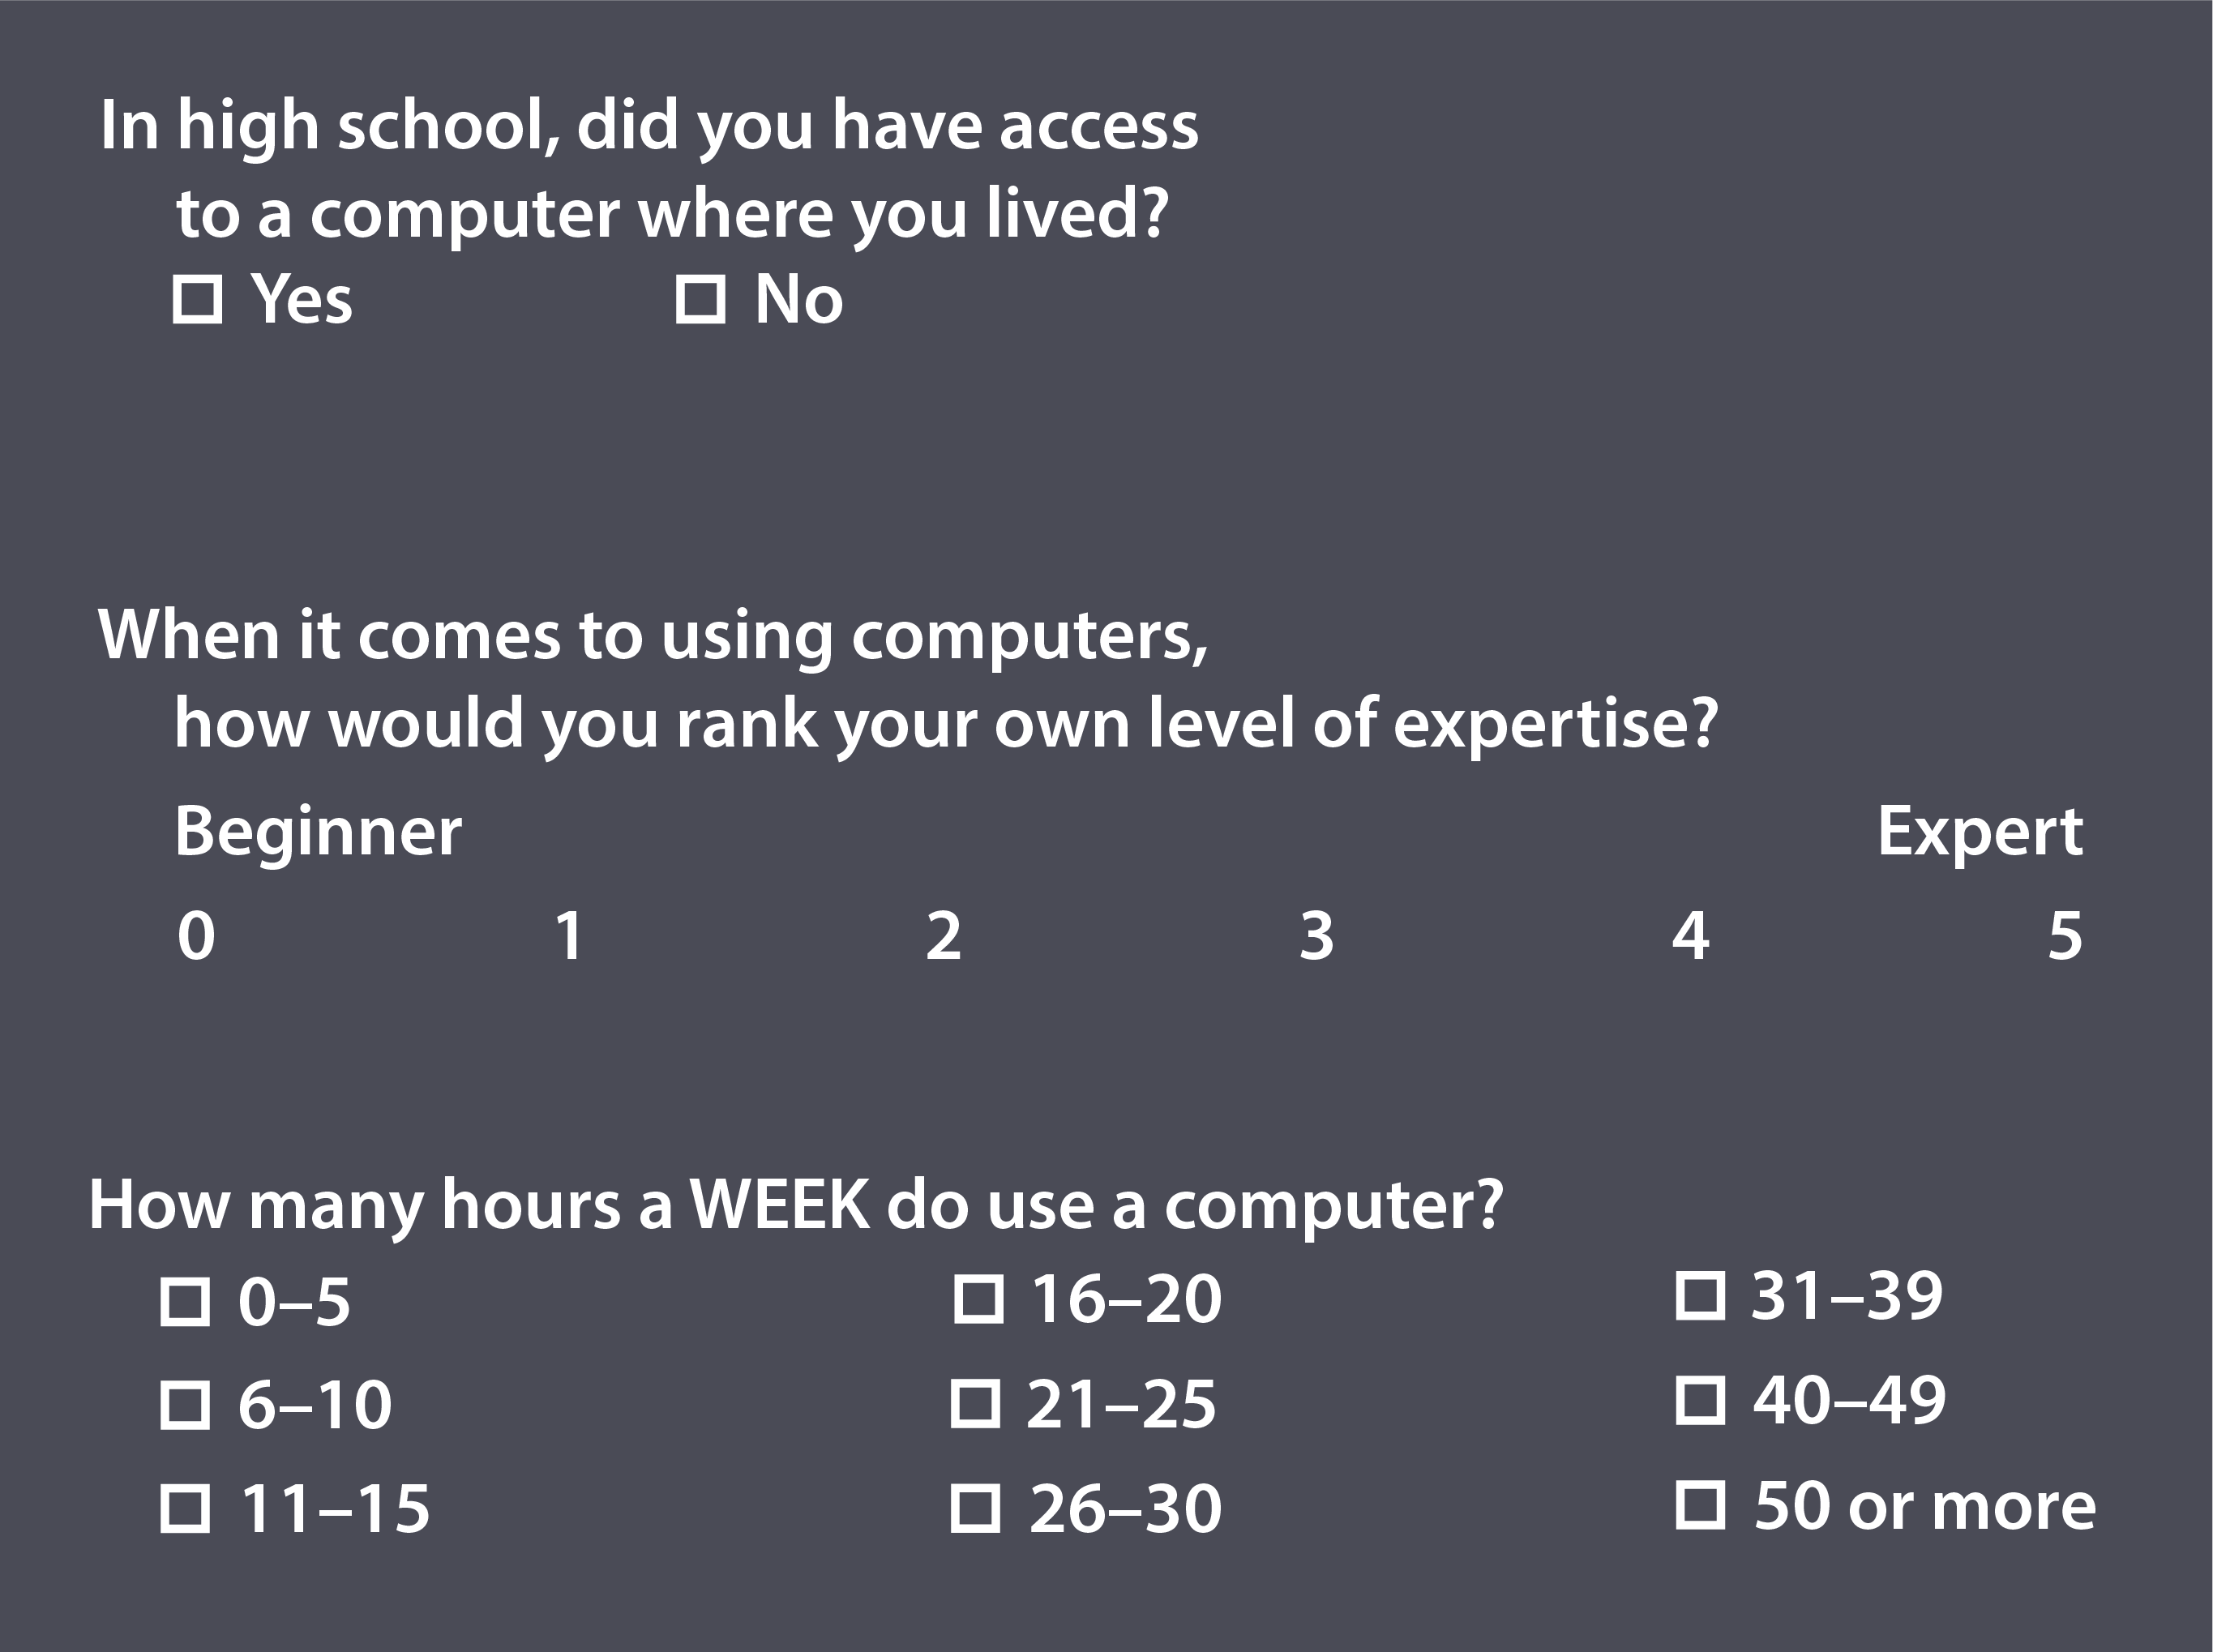 survey questions